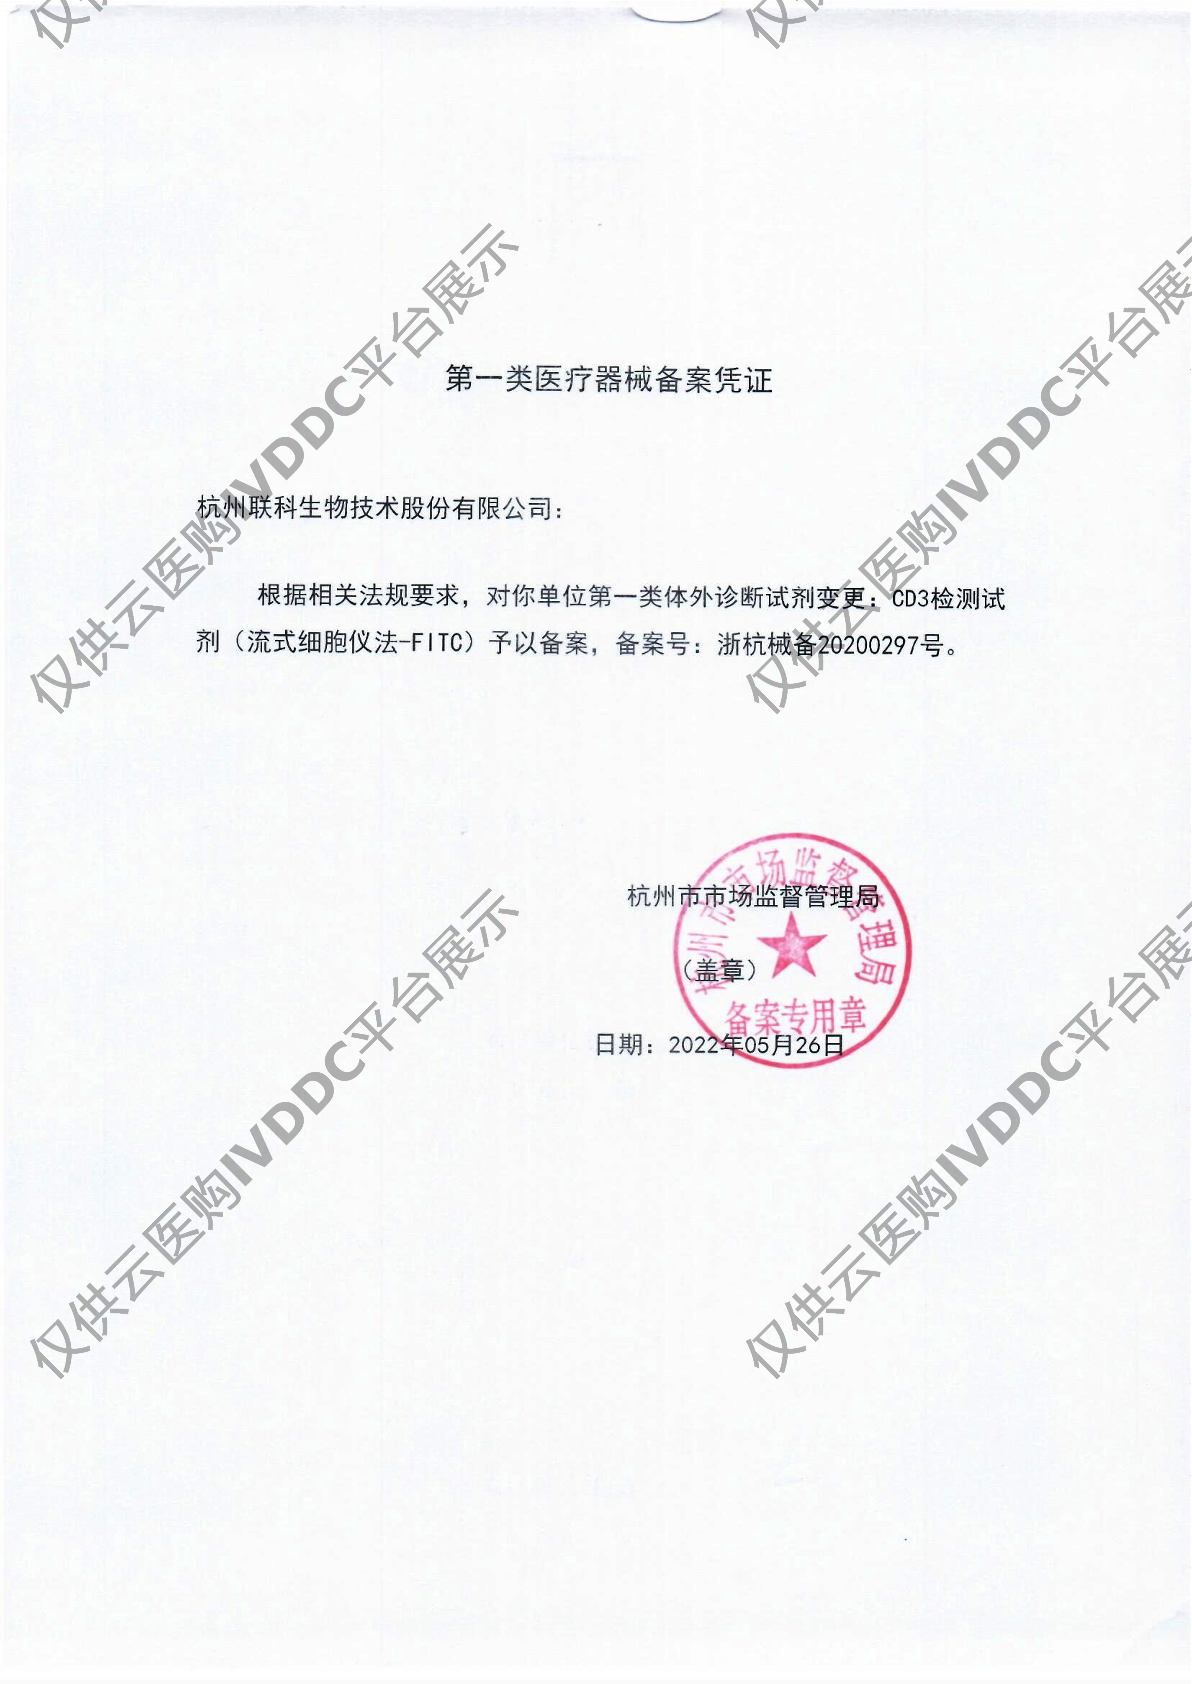 【联科】CD3检测试剂（流式细胞仪法-FITC）注册证